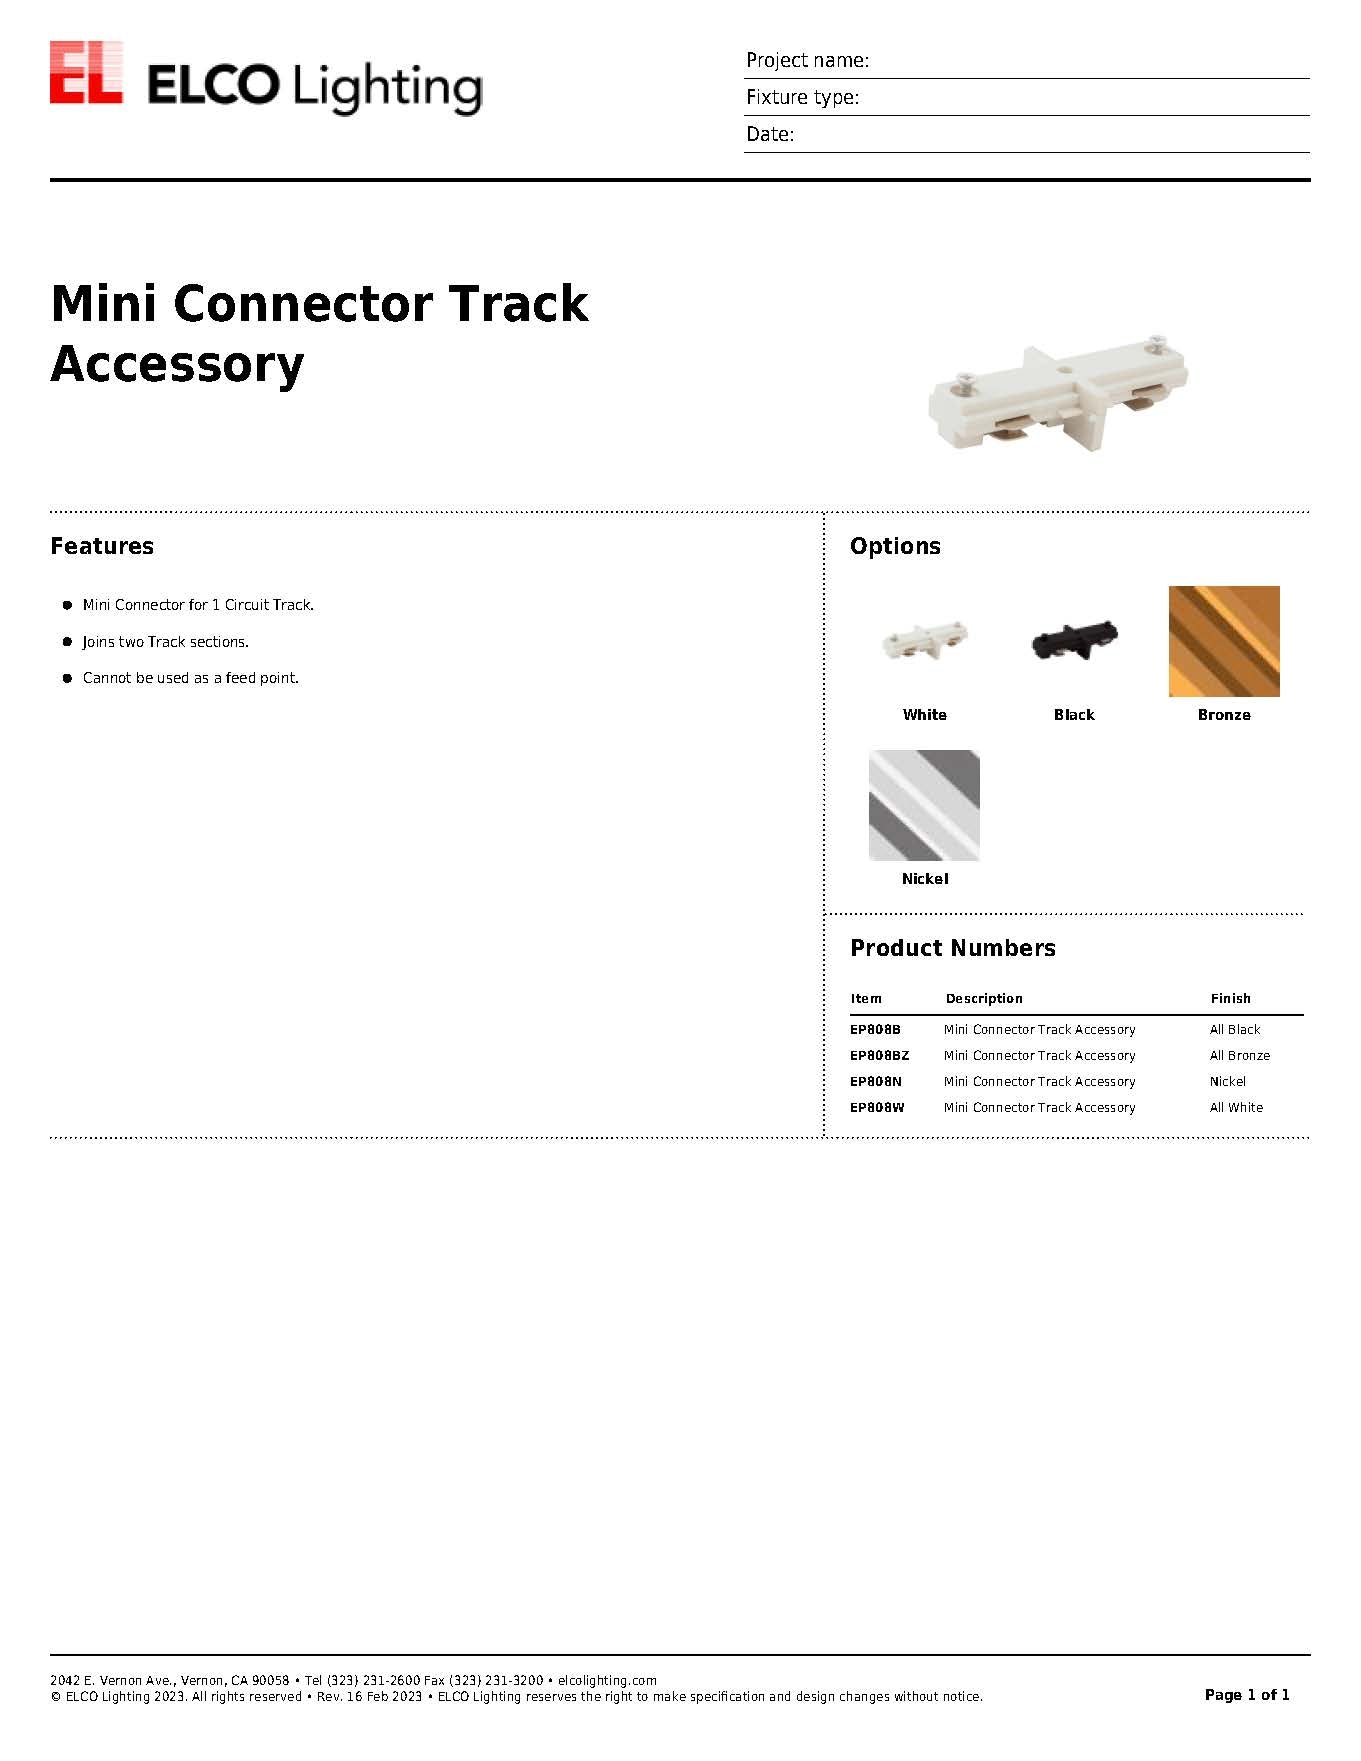 Mini Connector Track Accessory